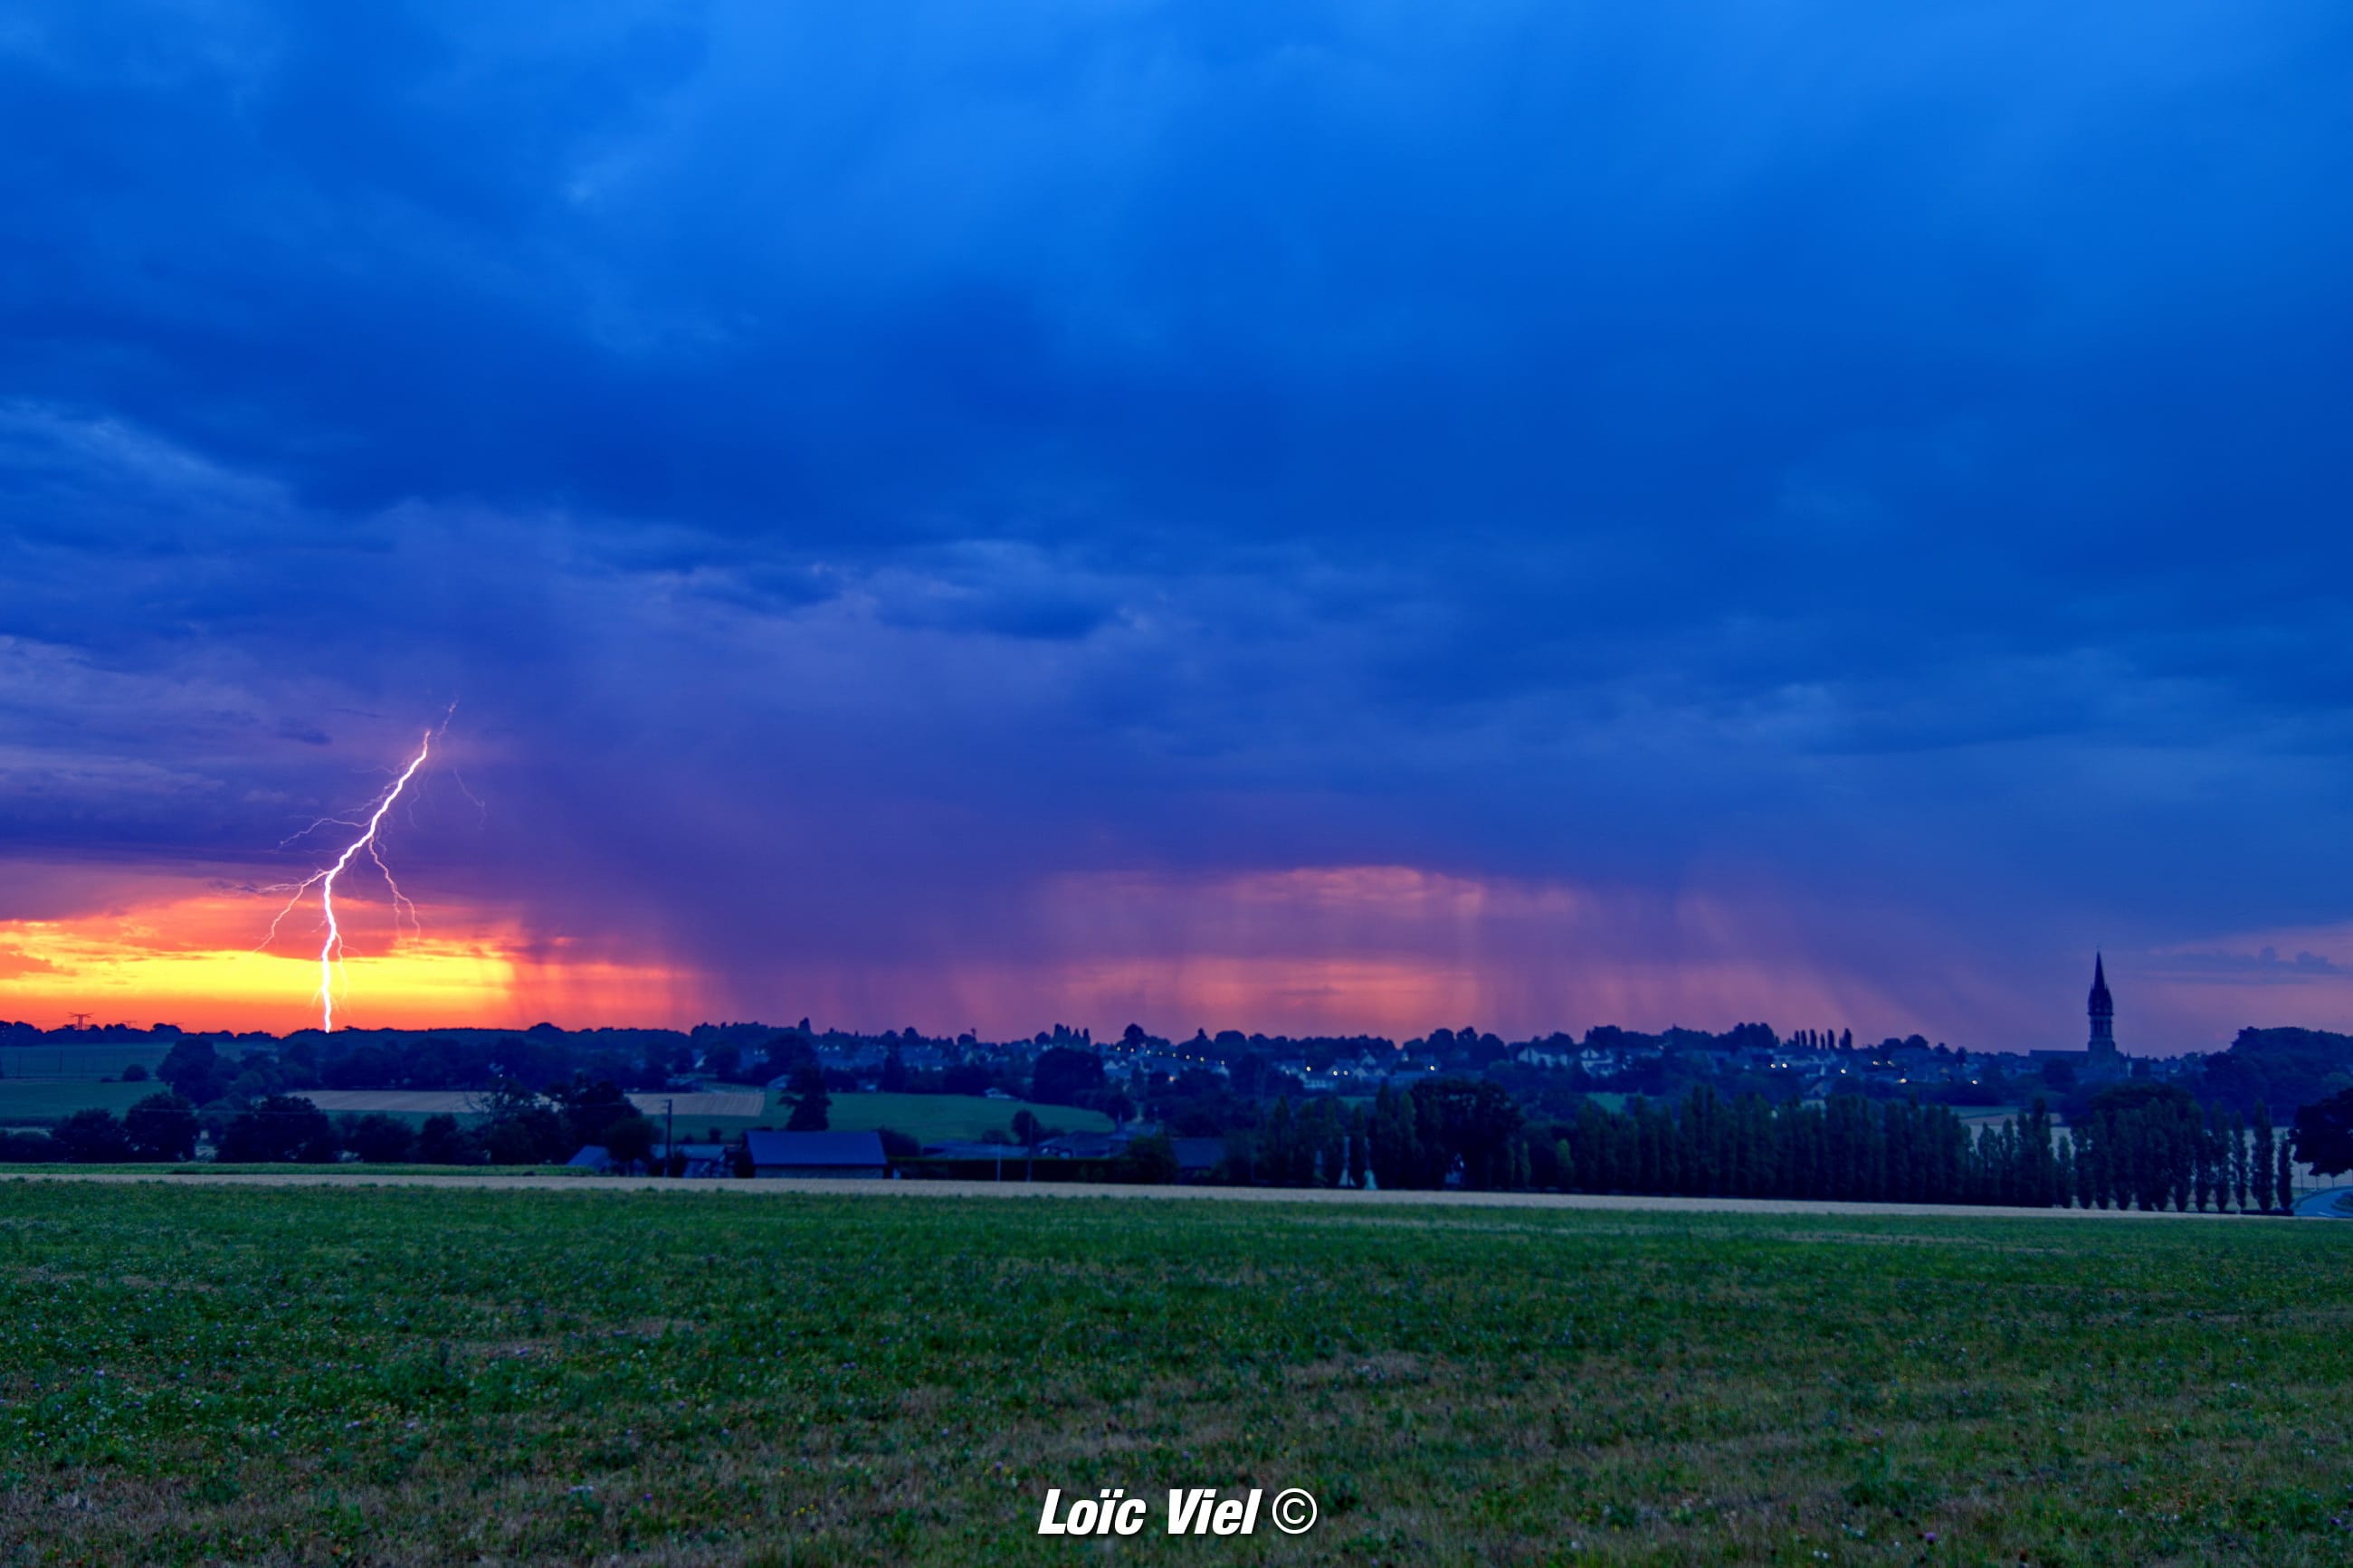 La foudre qui vient transpercer ce ciel flamboyant sur la commune de Domalain (35) - 08/08/2020 07:20 - Loïc VIEL